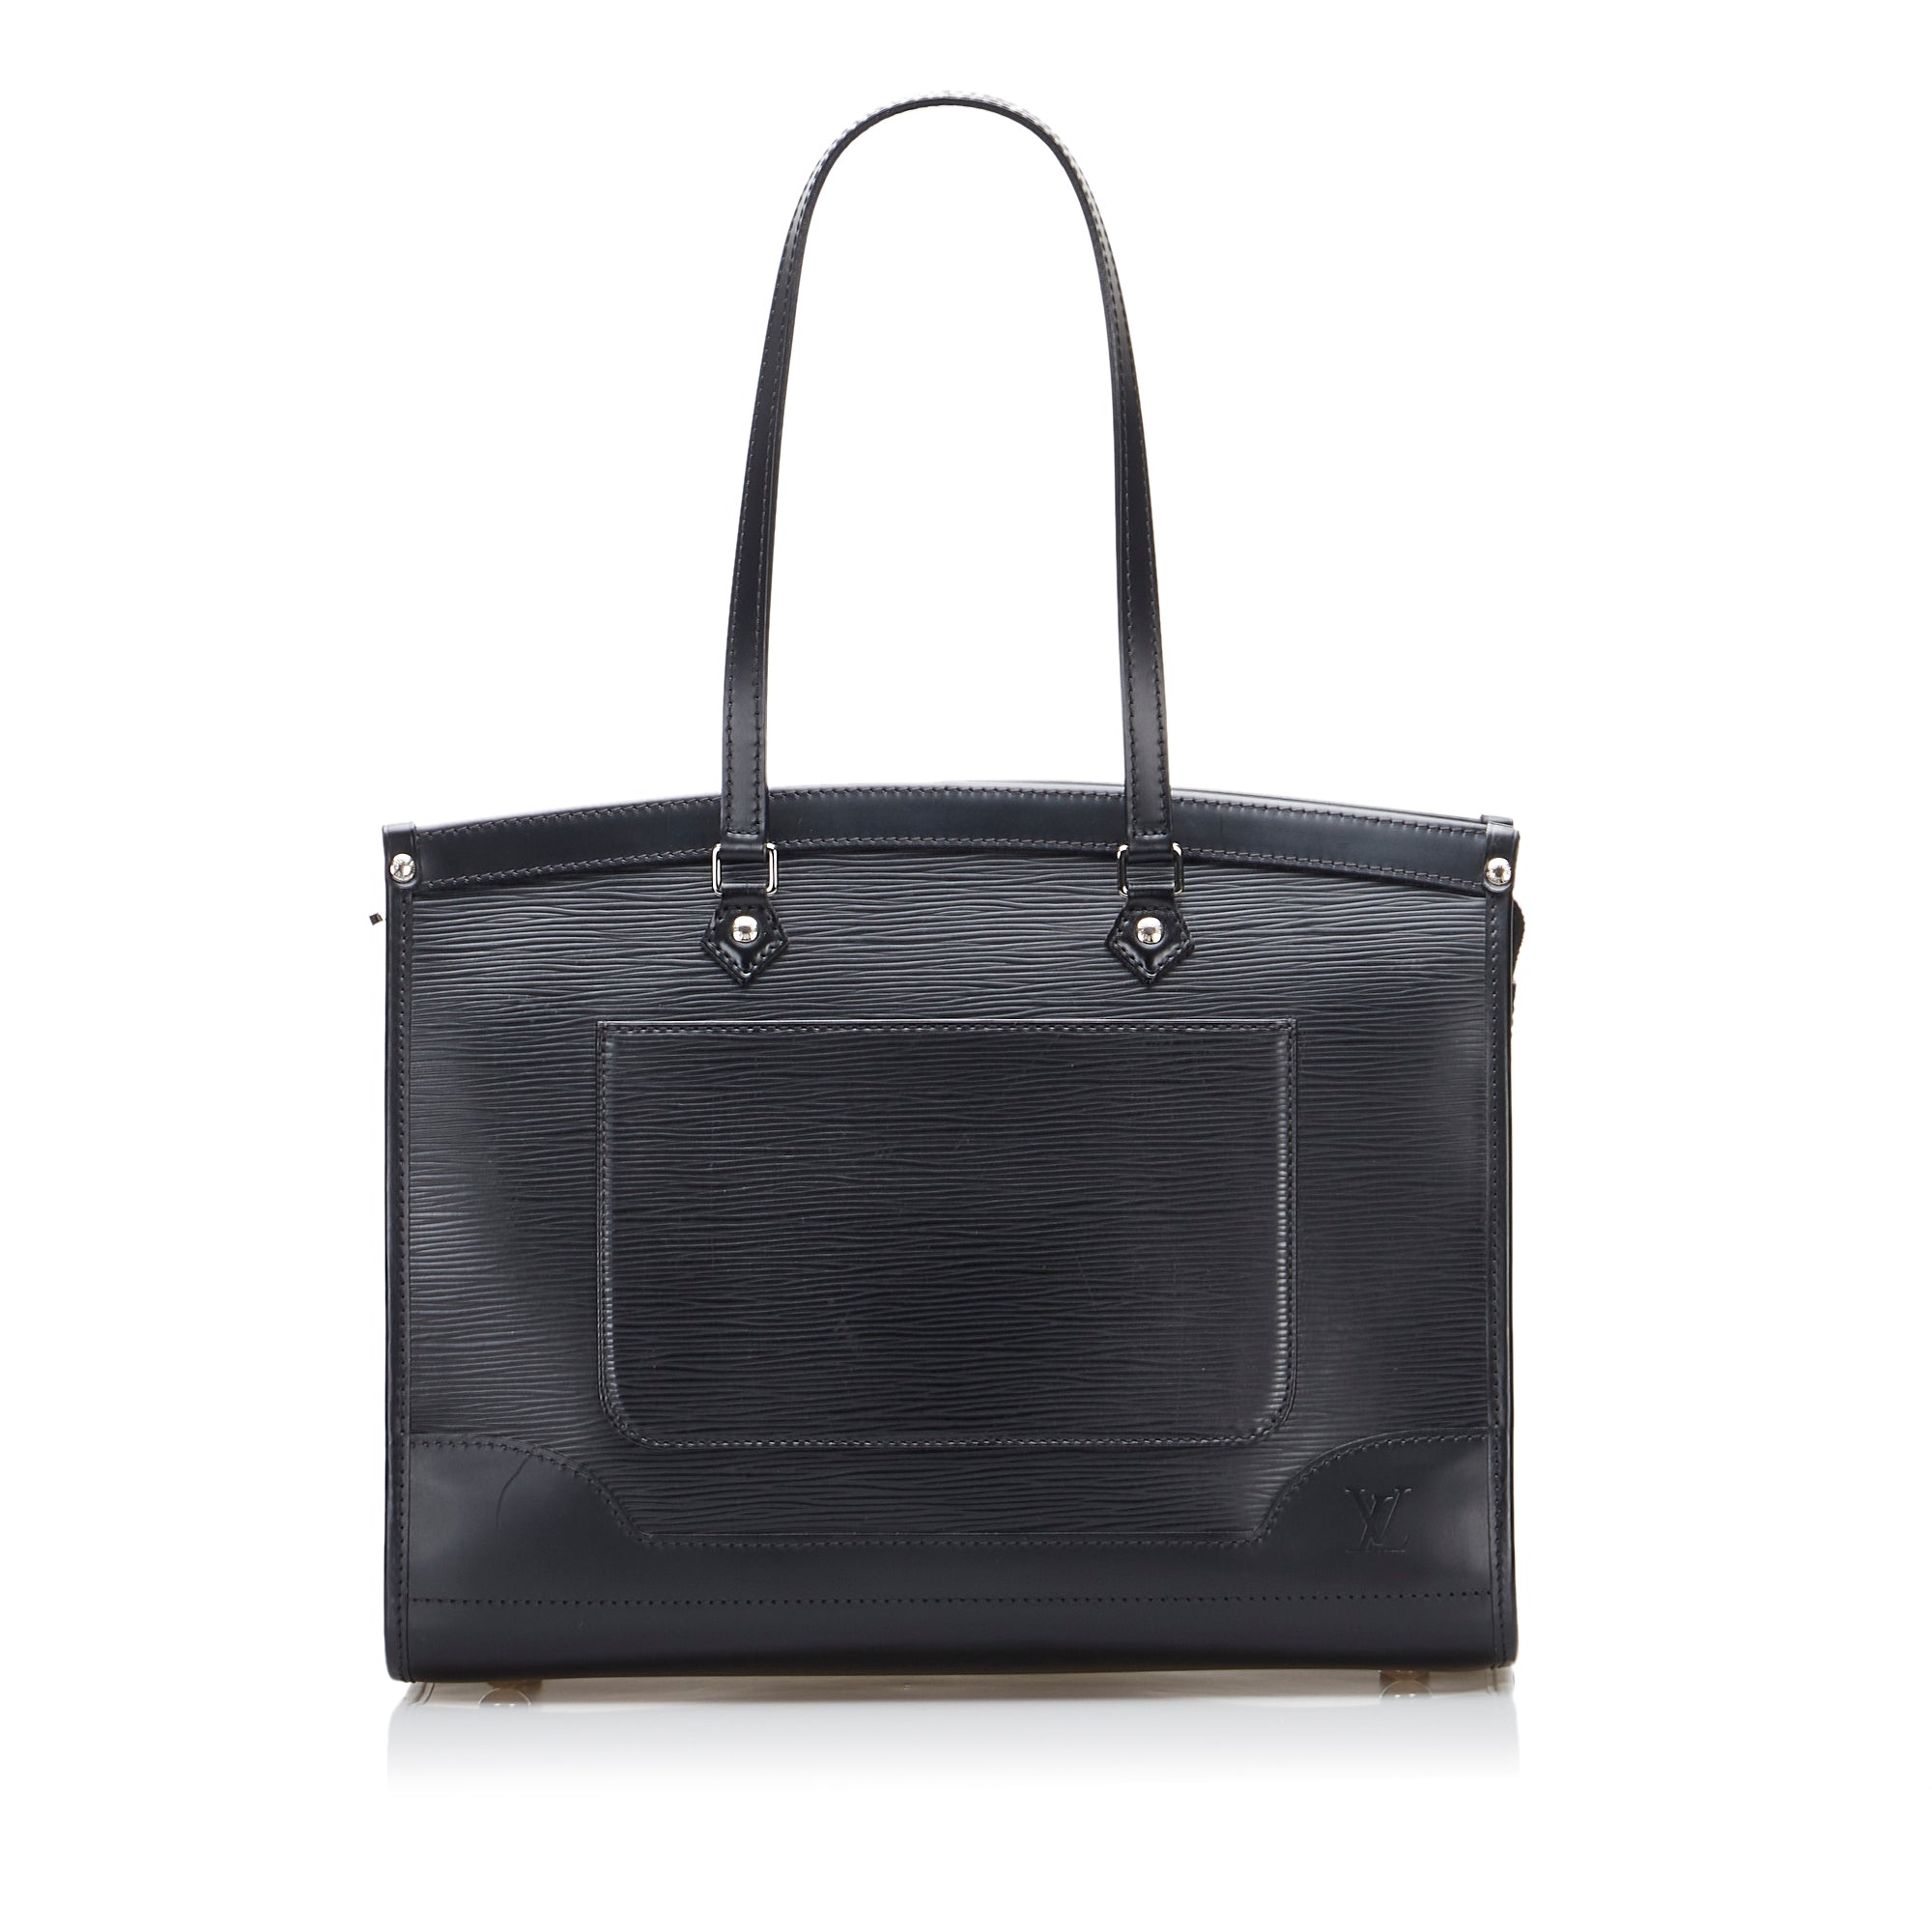 Louis Vuitton - Cosmetic Pouch Epi Leather Noir